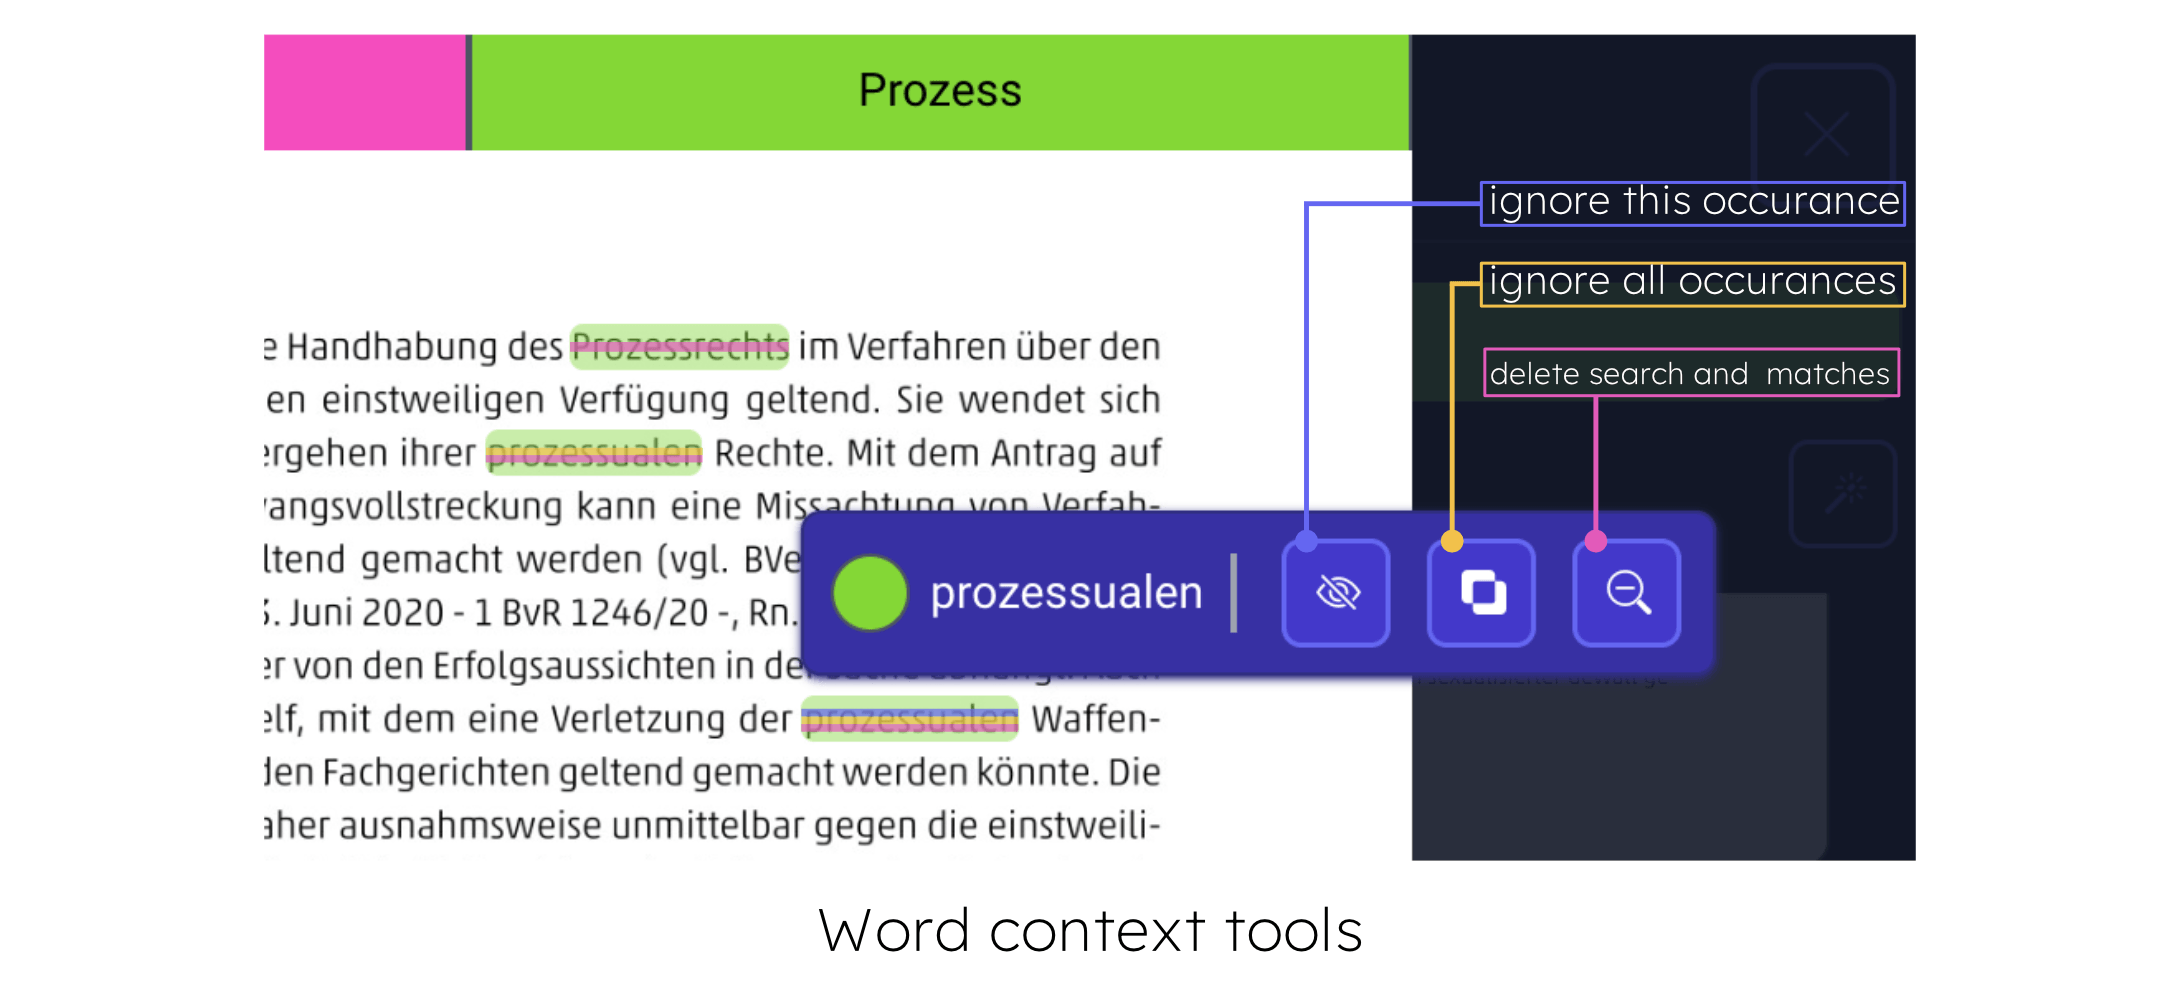 1.9.2 text context tools